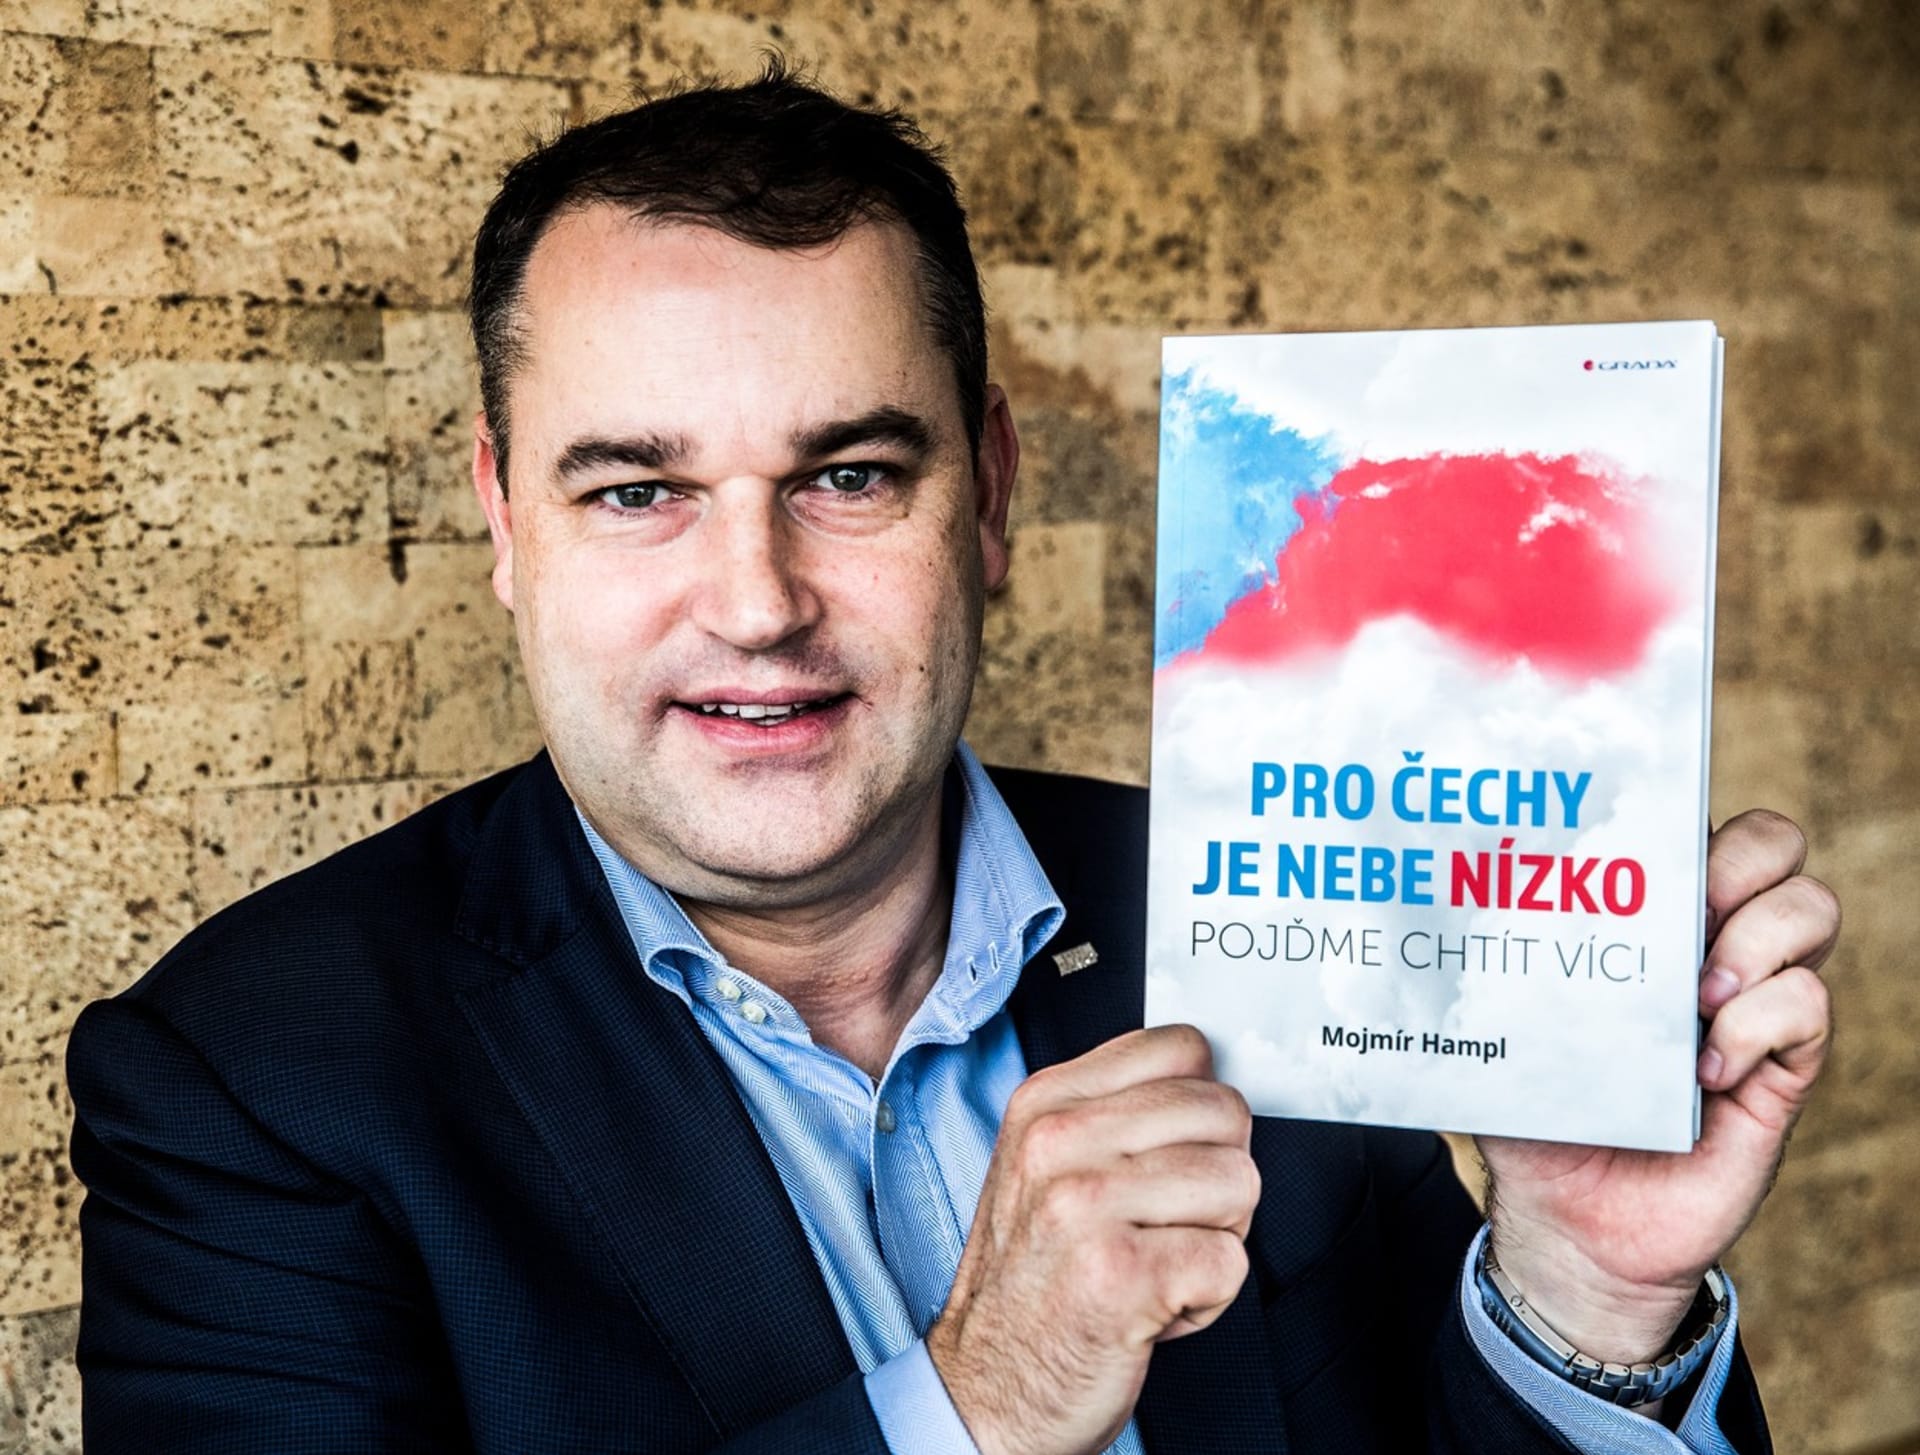 Spisovatel. Mojmír Hampl po odchodu z České národní banky napsal knihu o Češích. Máme si podle něho více věřit. Foto: Profimedia